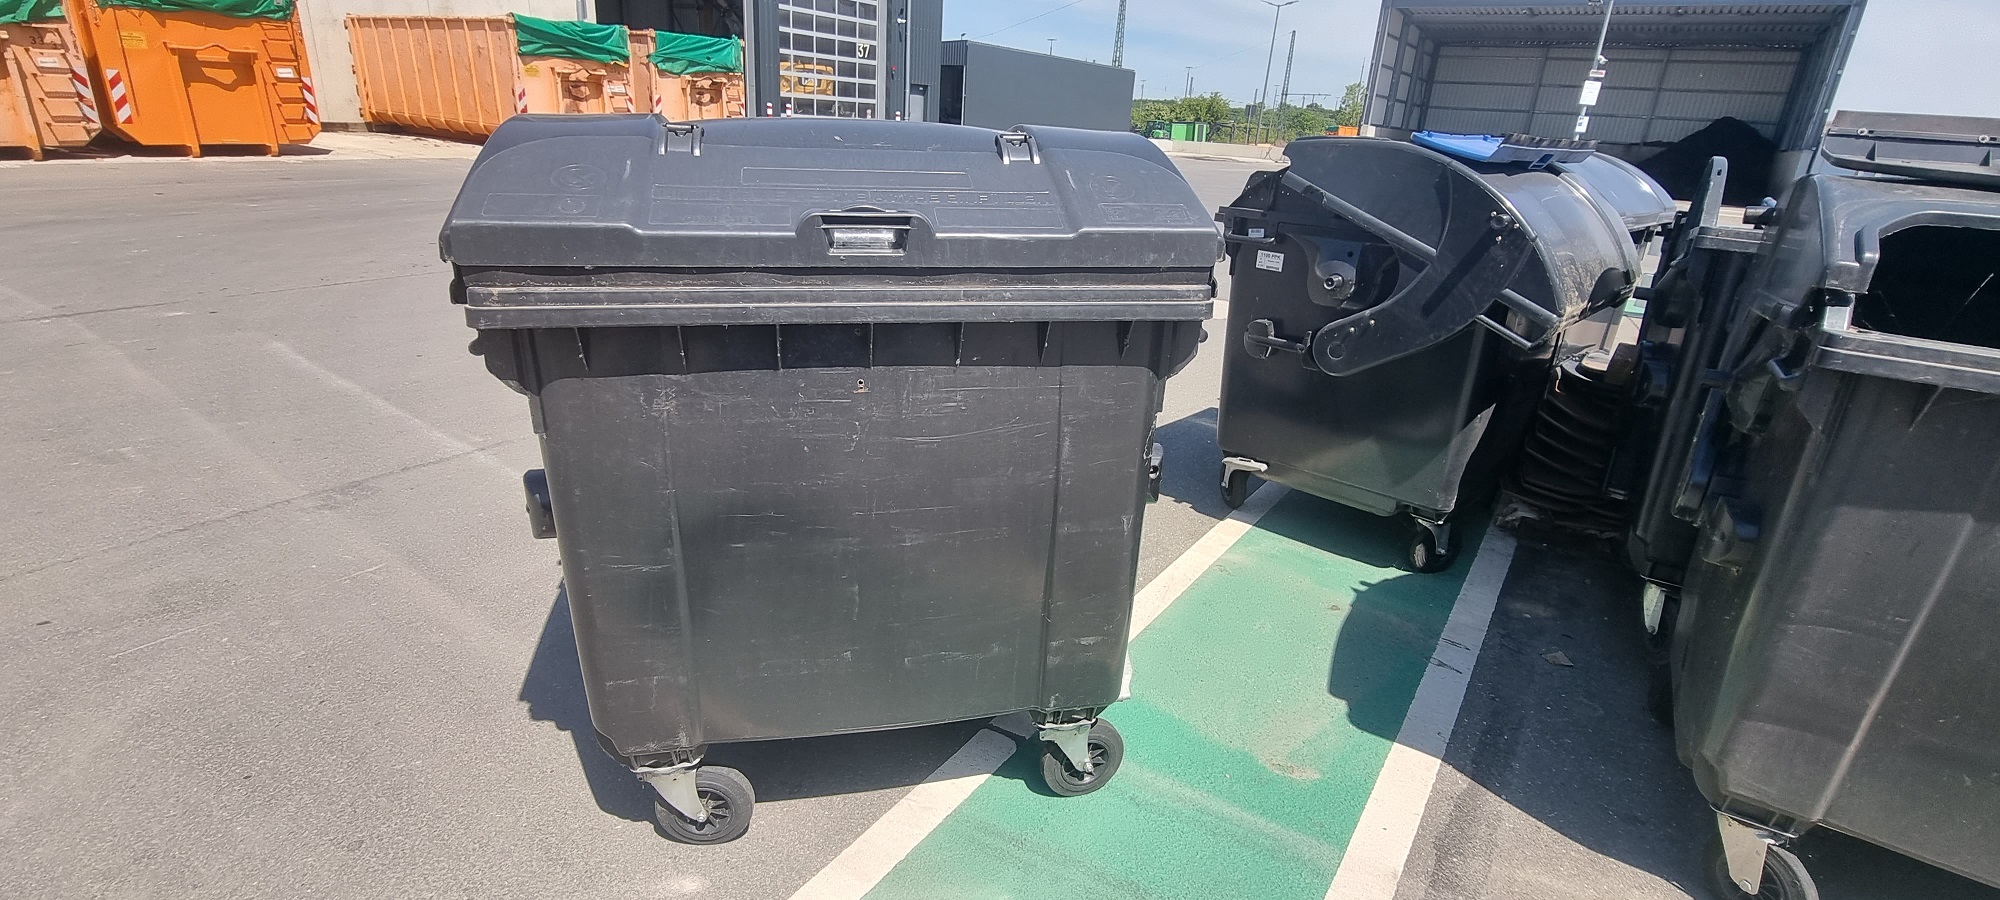 Foto: große Müllsammelbehälter